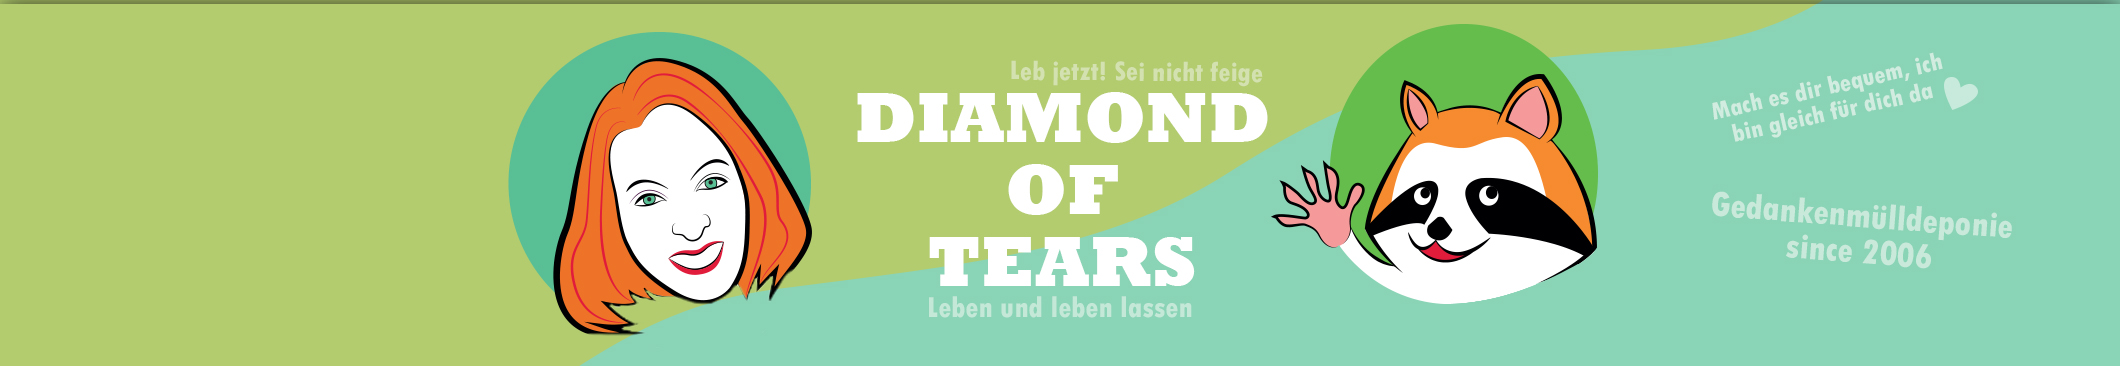 DiamondOfTears Gedanken-Mülldeponie header image